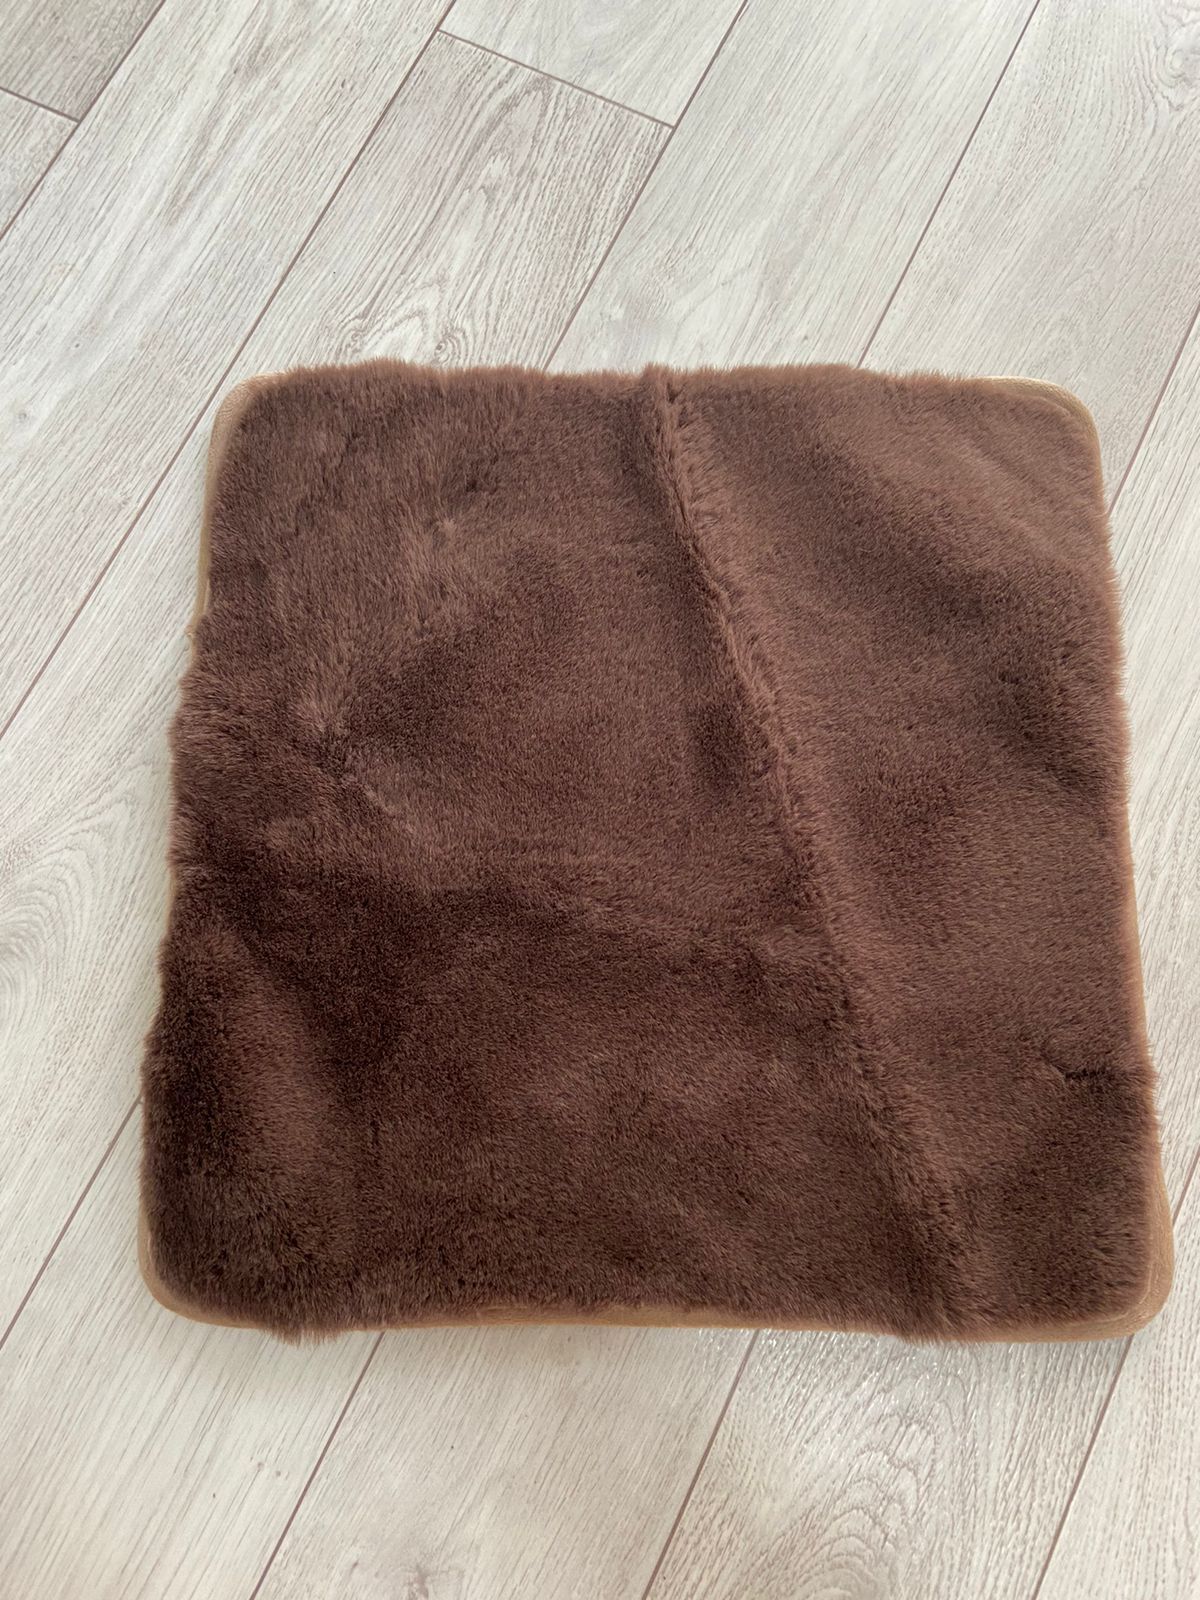 Меховая подушка для сидения с антискользящим покрытием 45x45 см, цвет коричневый